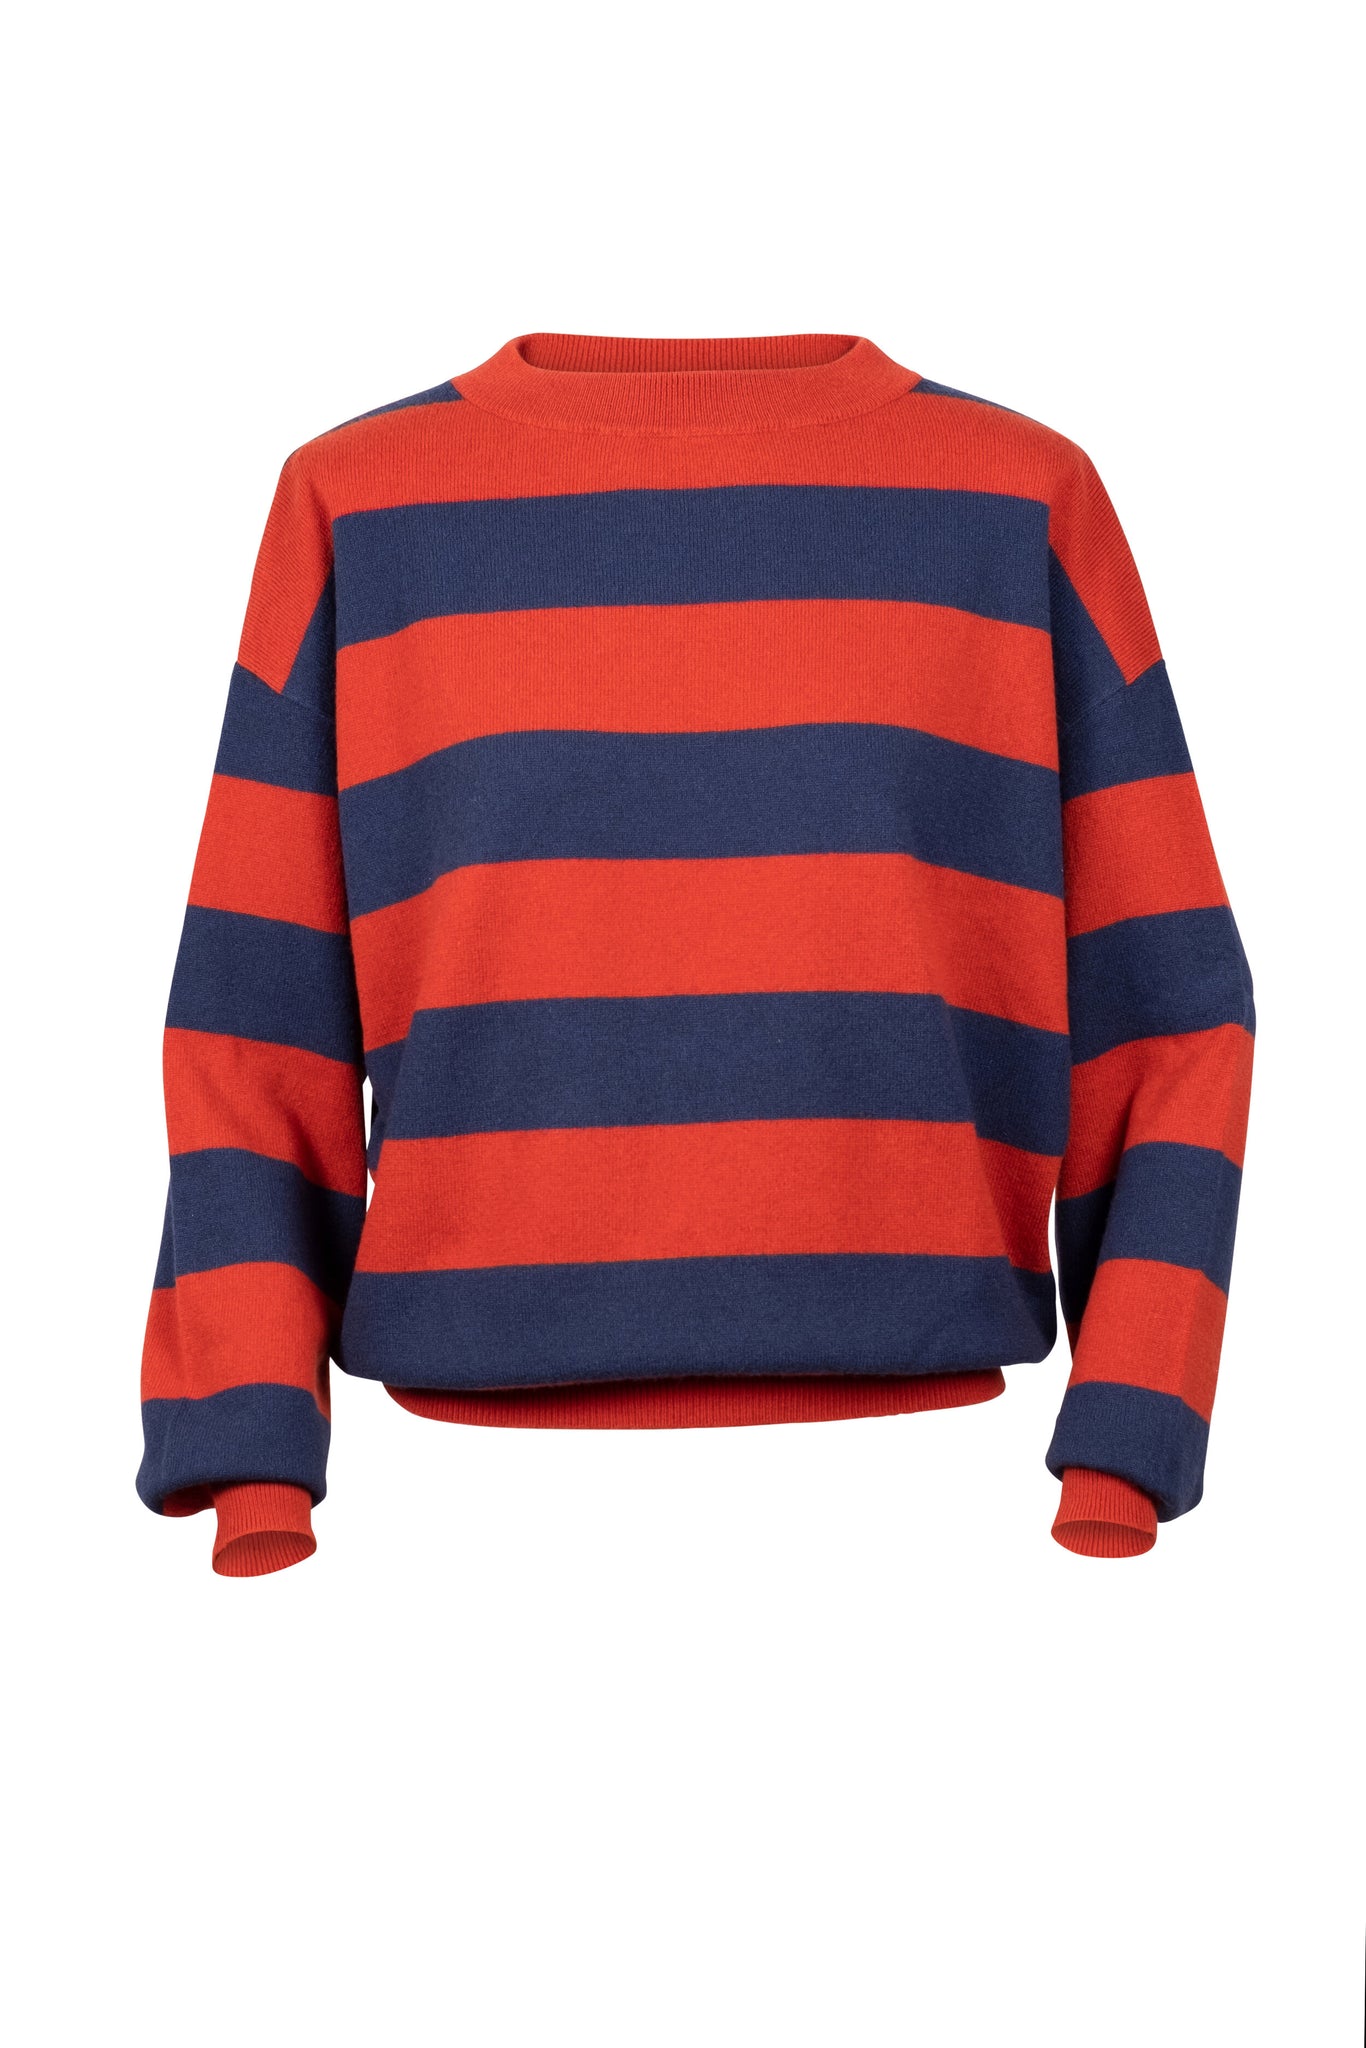 TUYA Sweater